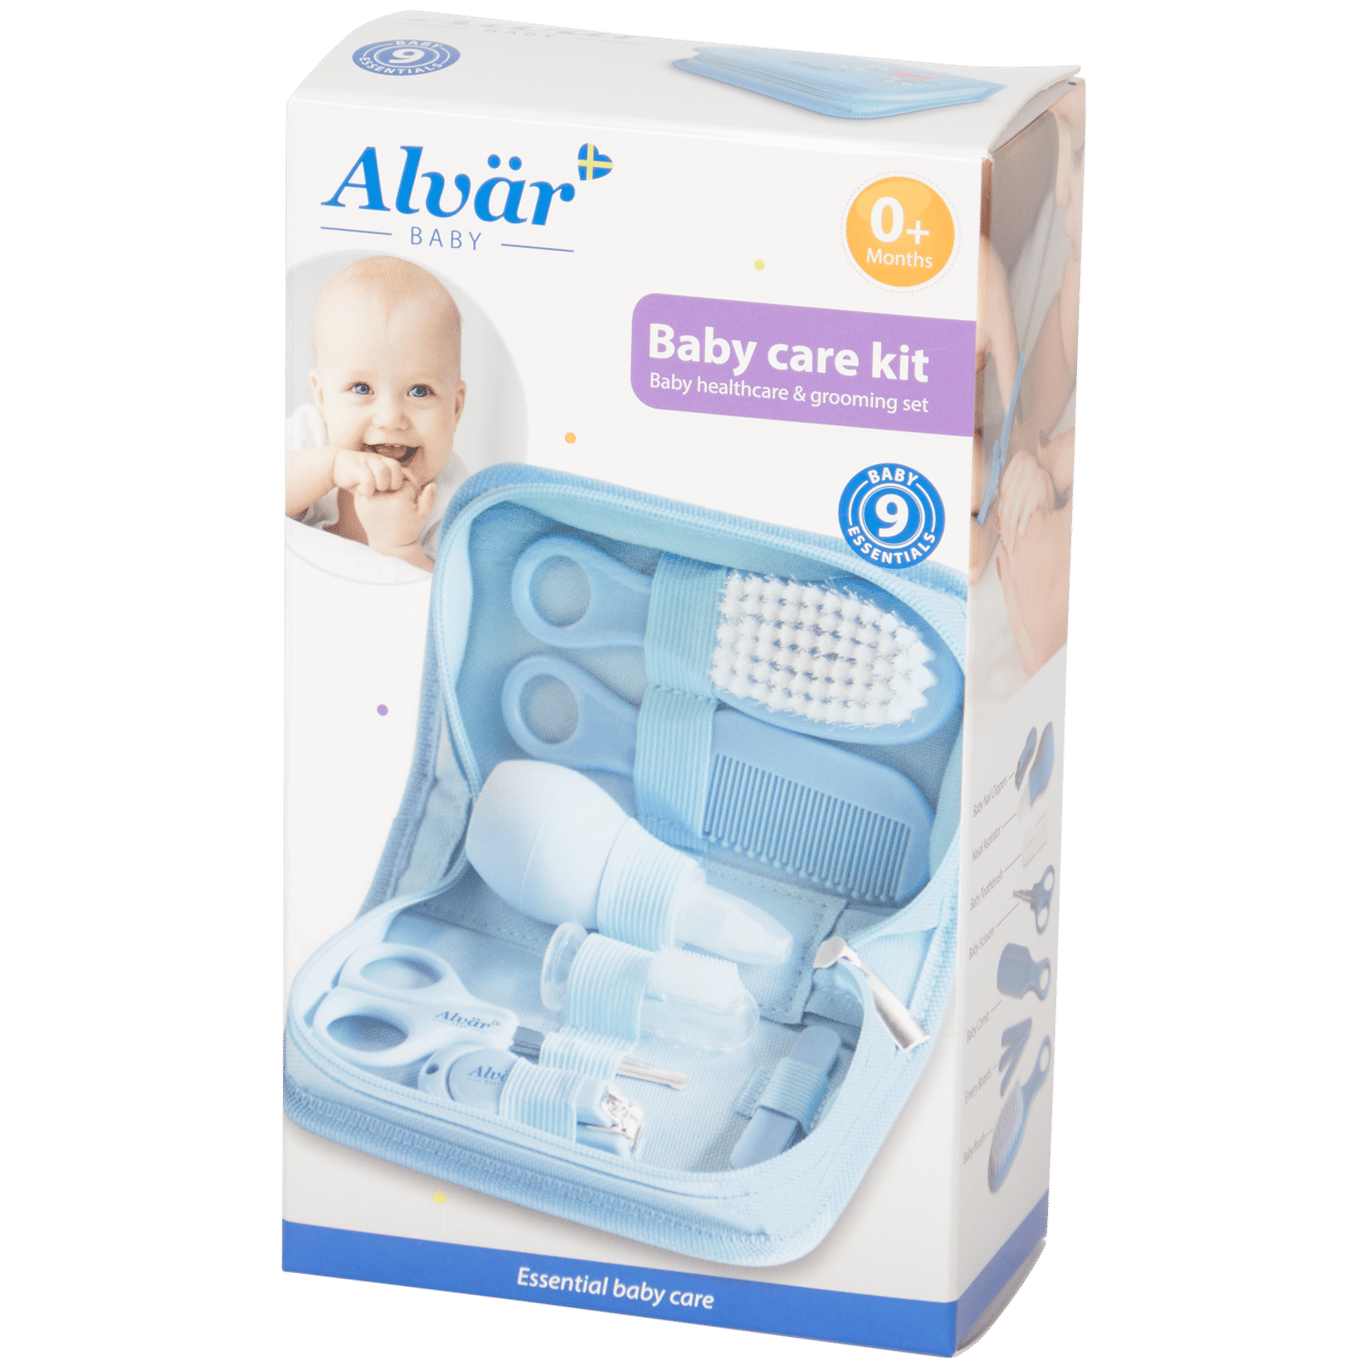 Kit de soins pour bébé Alvär